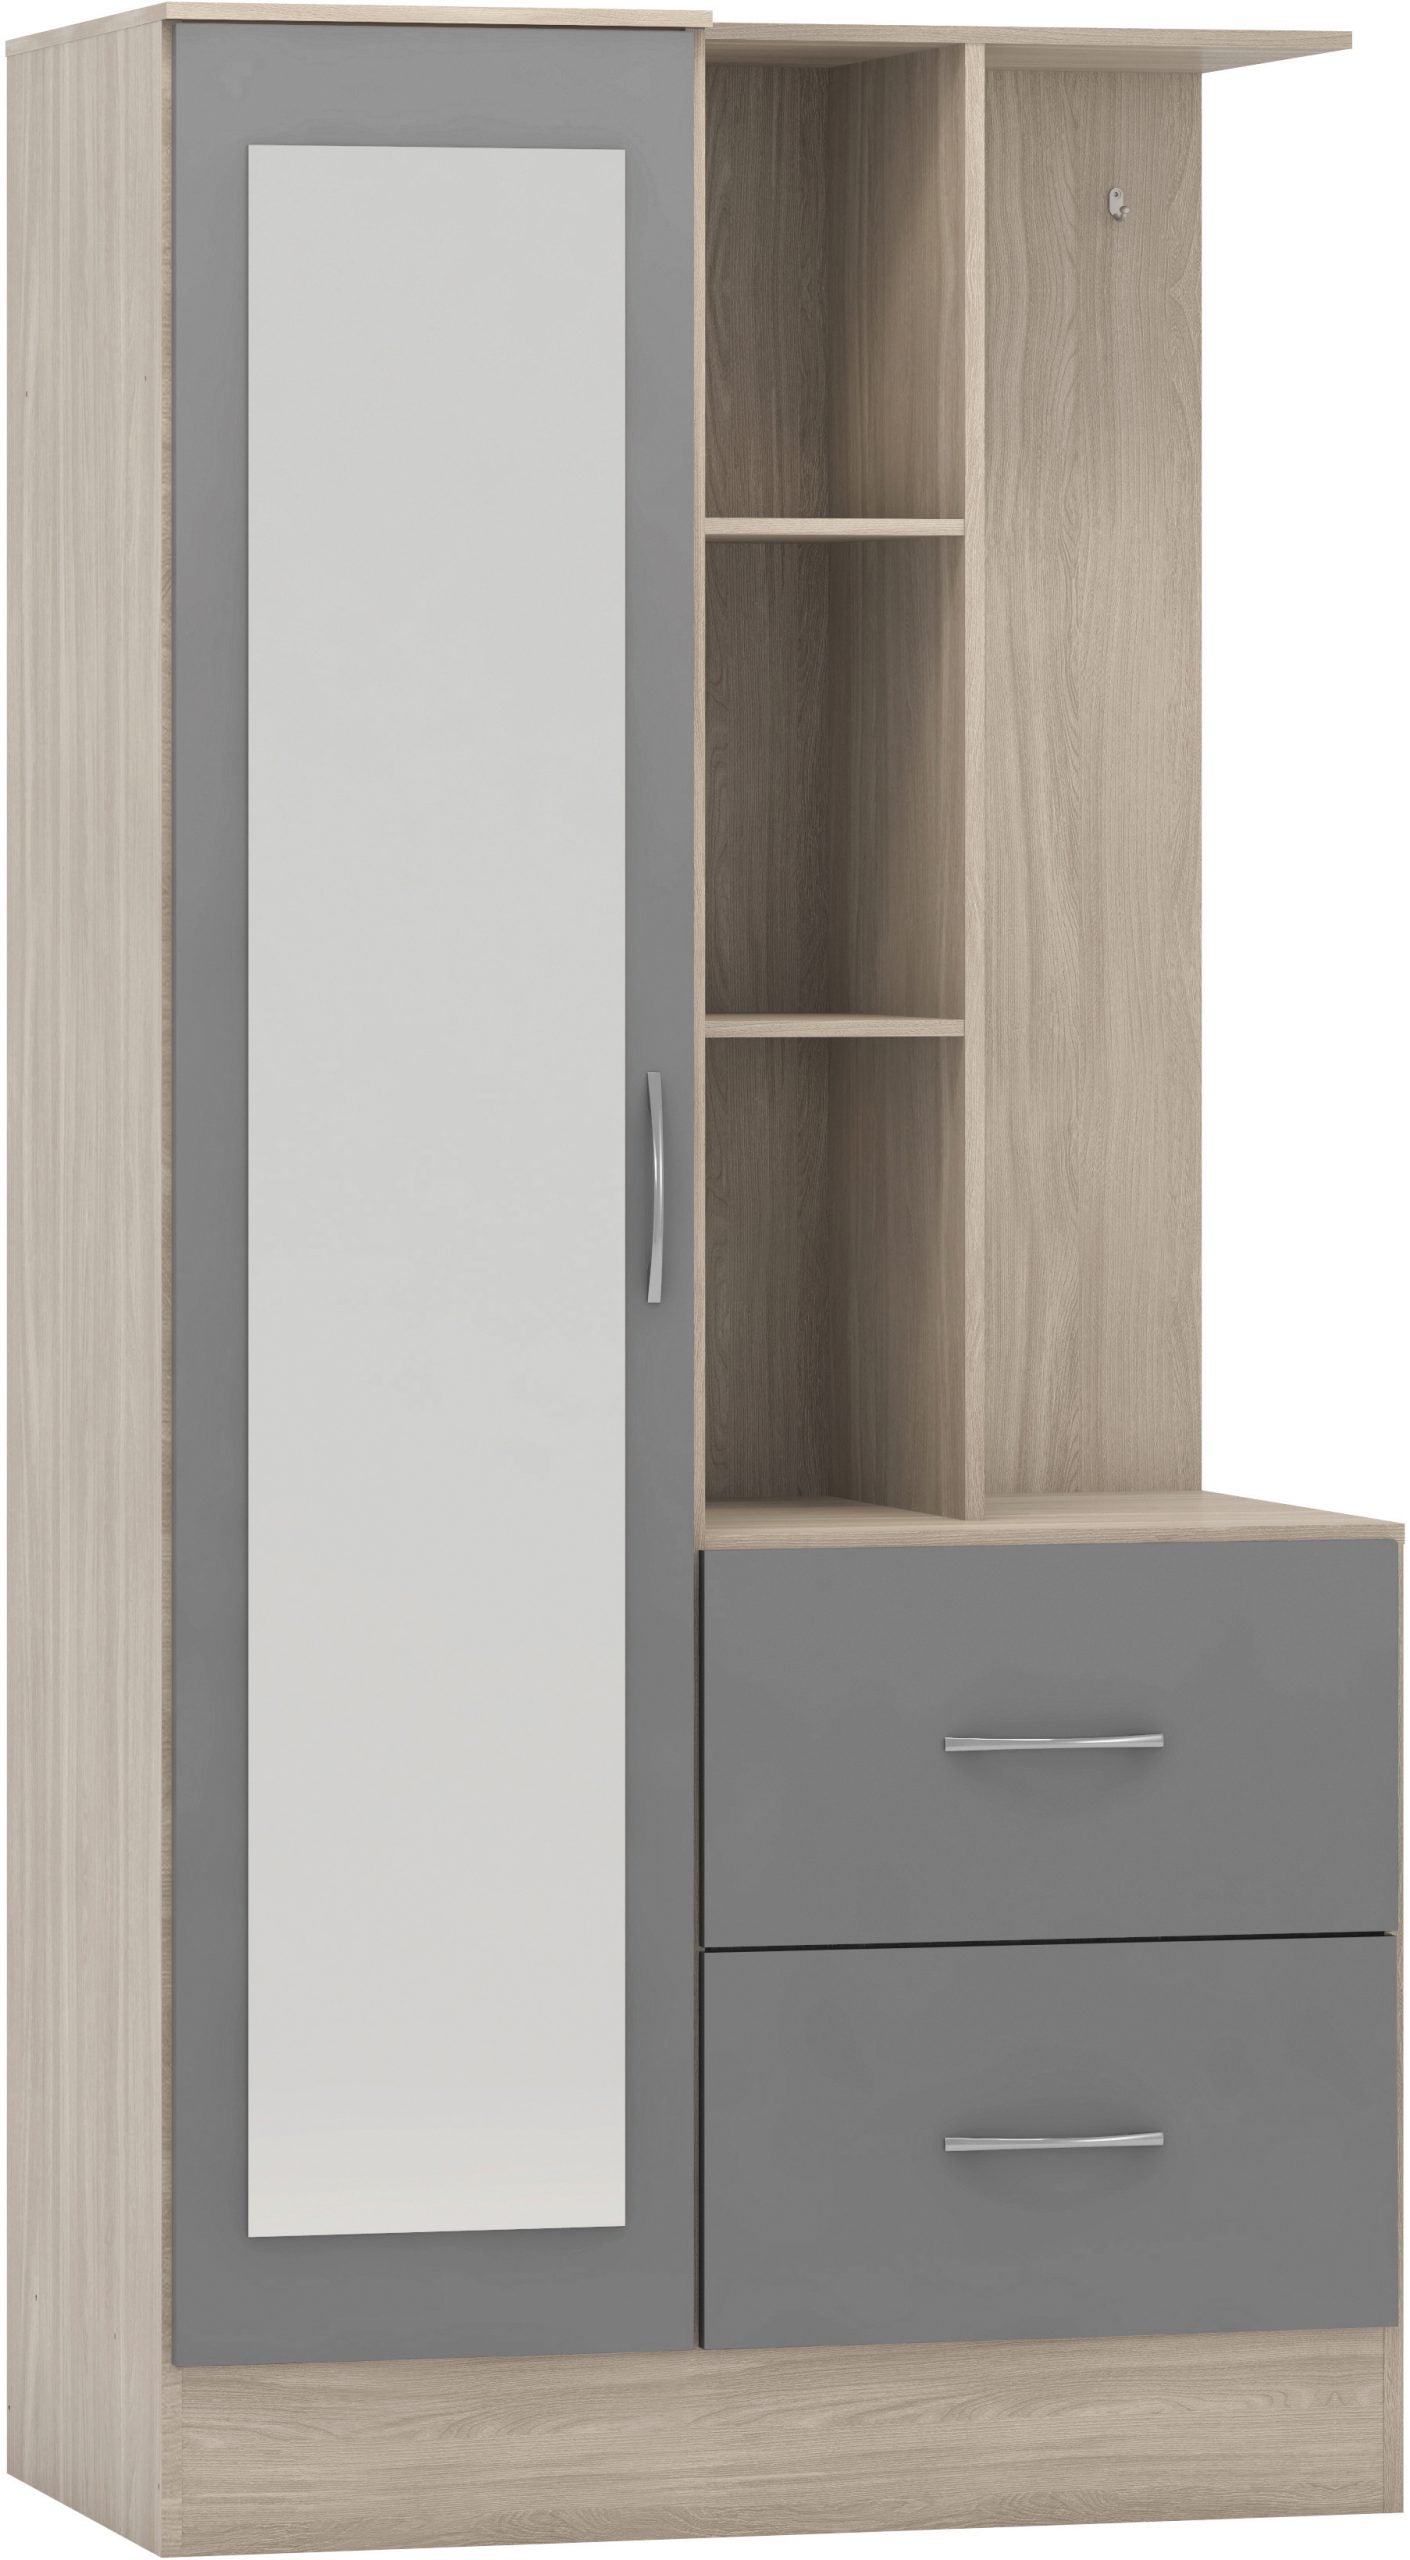 Nevada Mirrored Open Shelf Wardrobe Grey Gloss/Light Oak Effect Veneer